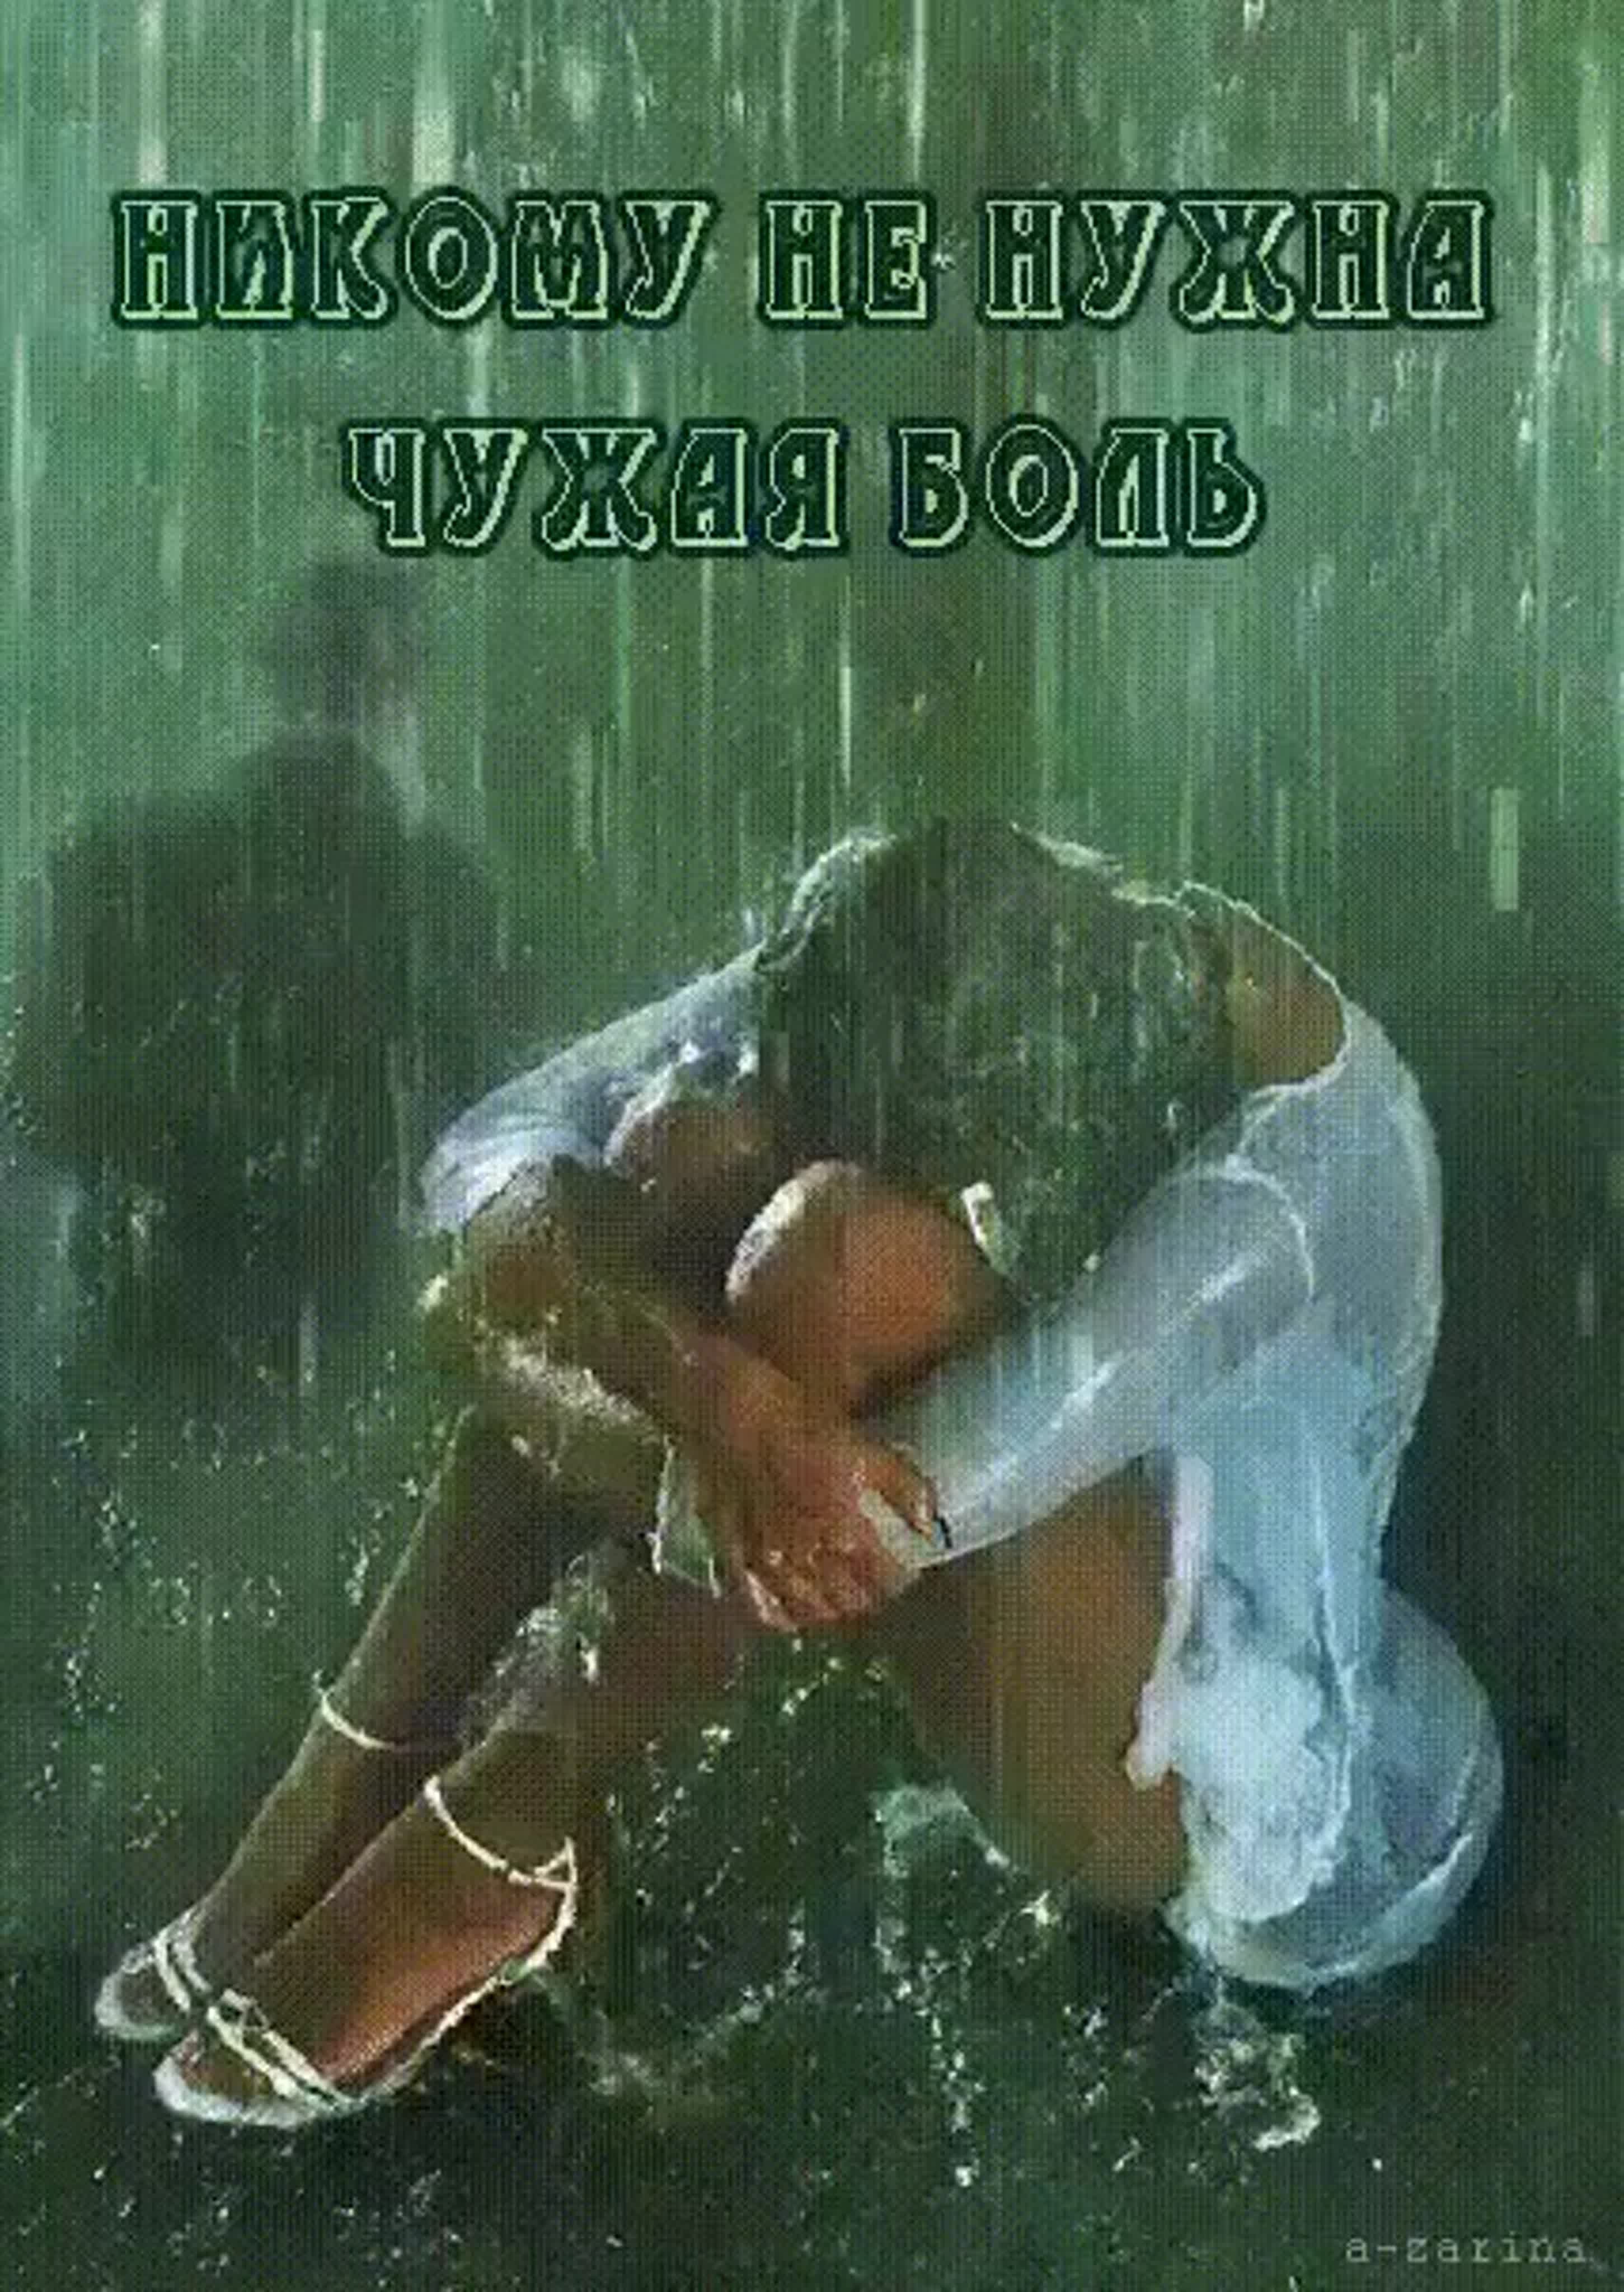 Хочу в душе женщину. Девушка под дождем. Девушка плачет под дождем. Левушка плачет под дождем. Человек в душе.